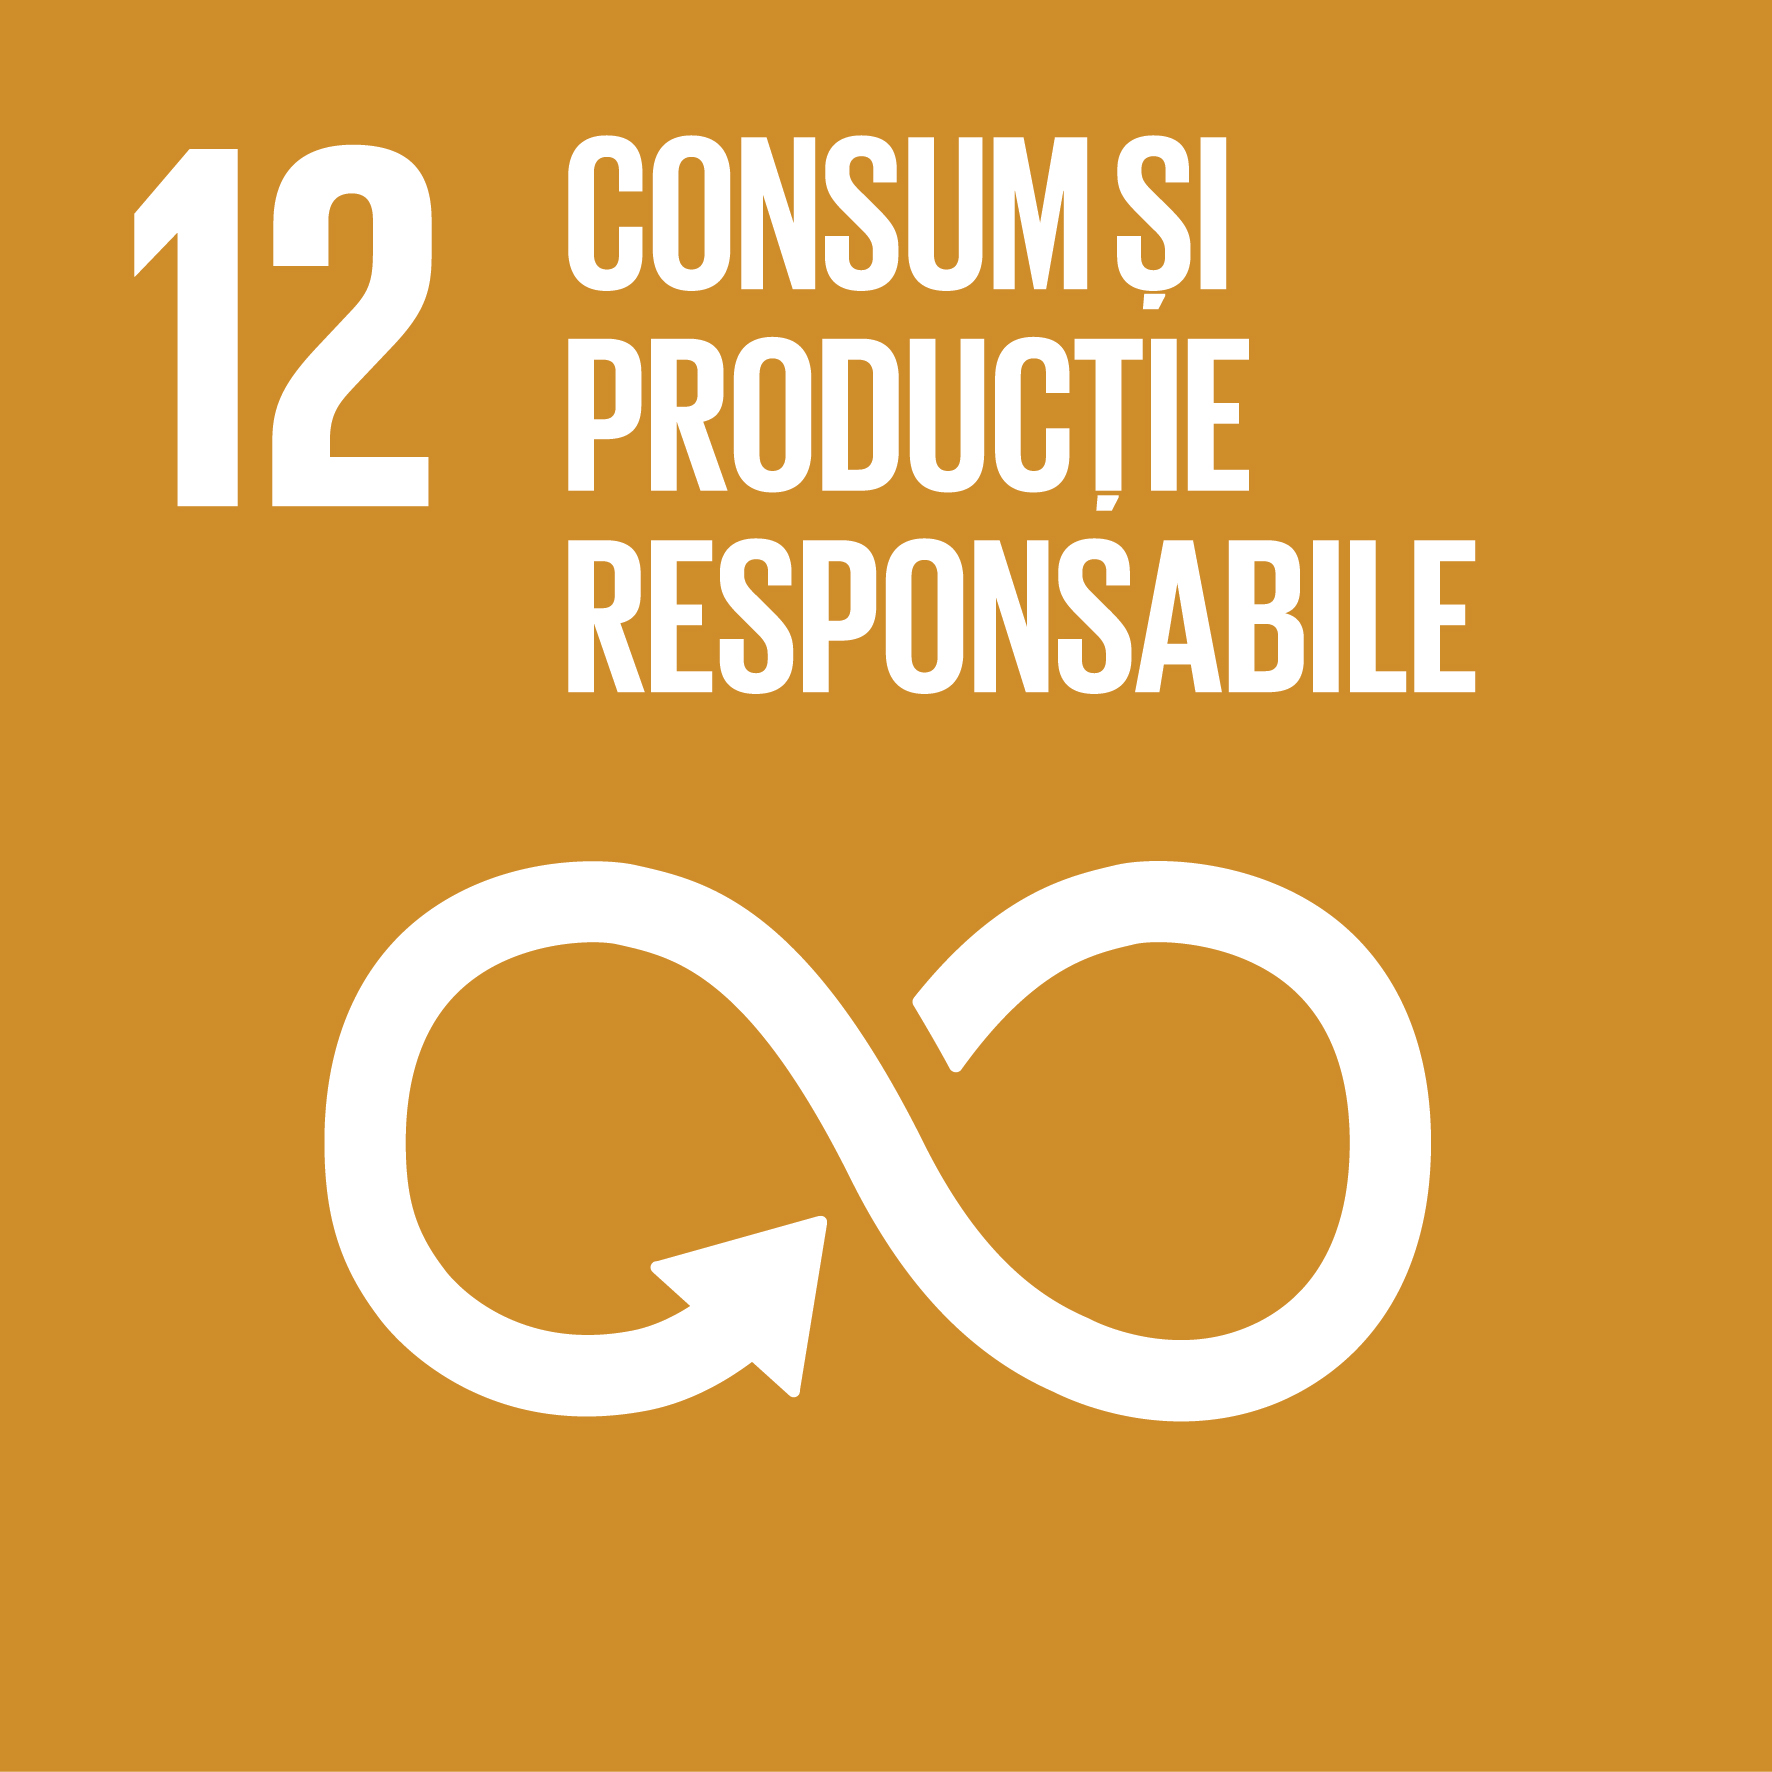 Consum și producție responsabile - Obiectiv 12